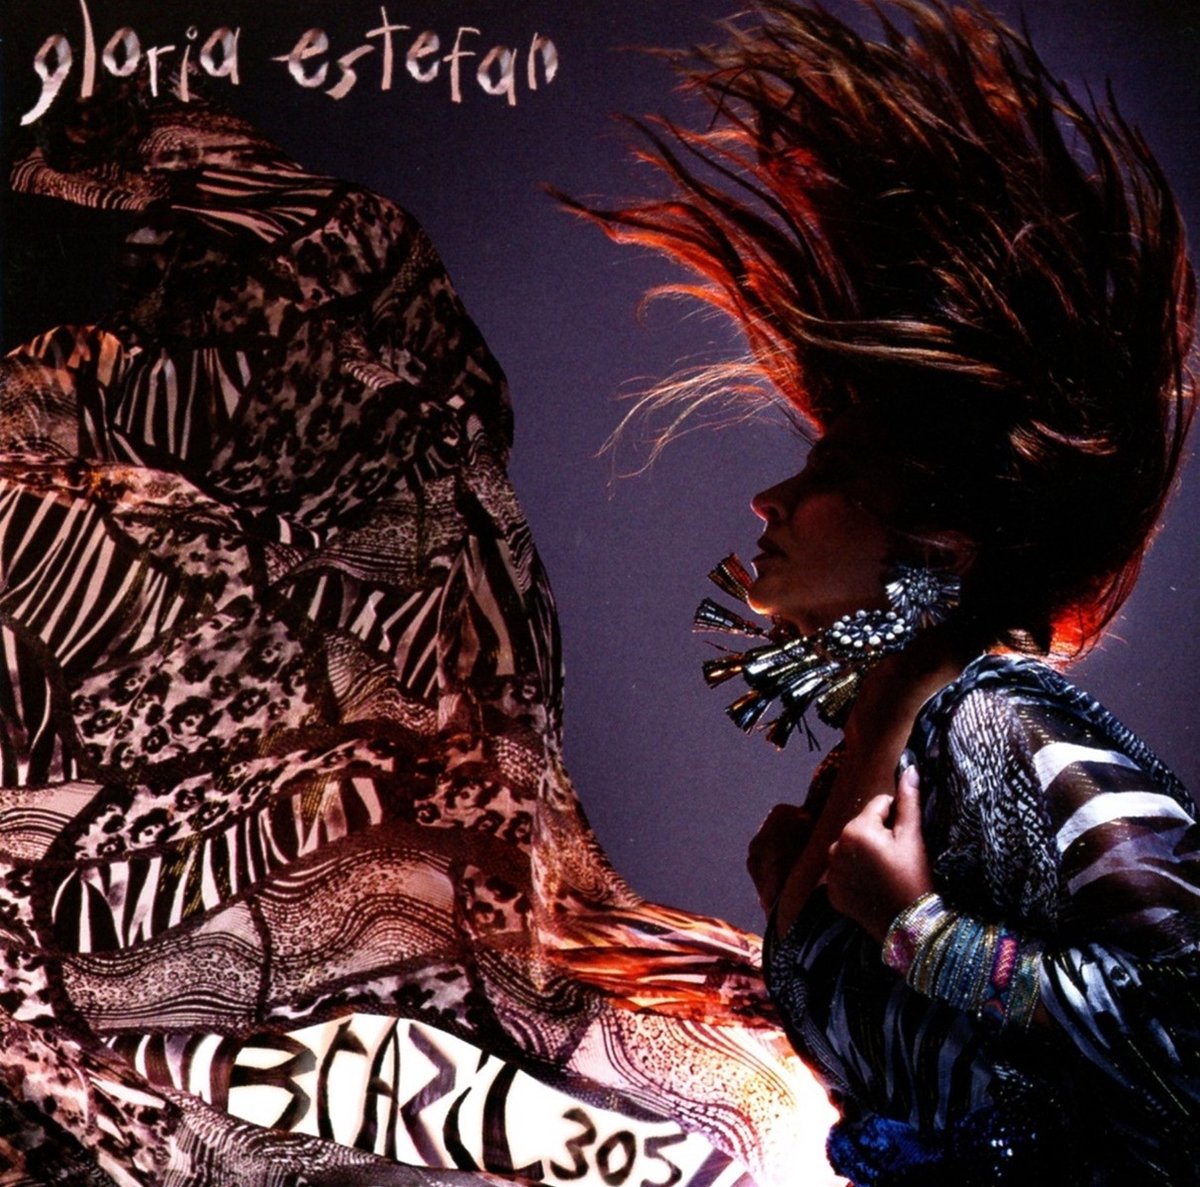 Gloria Estefan - Brazil 305 (CD) - Gloria Estefan